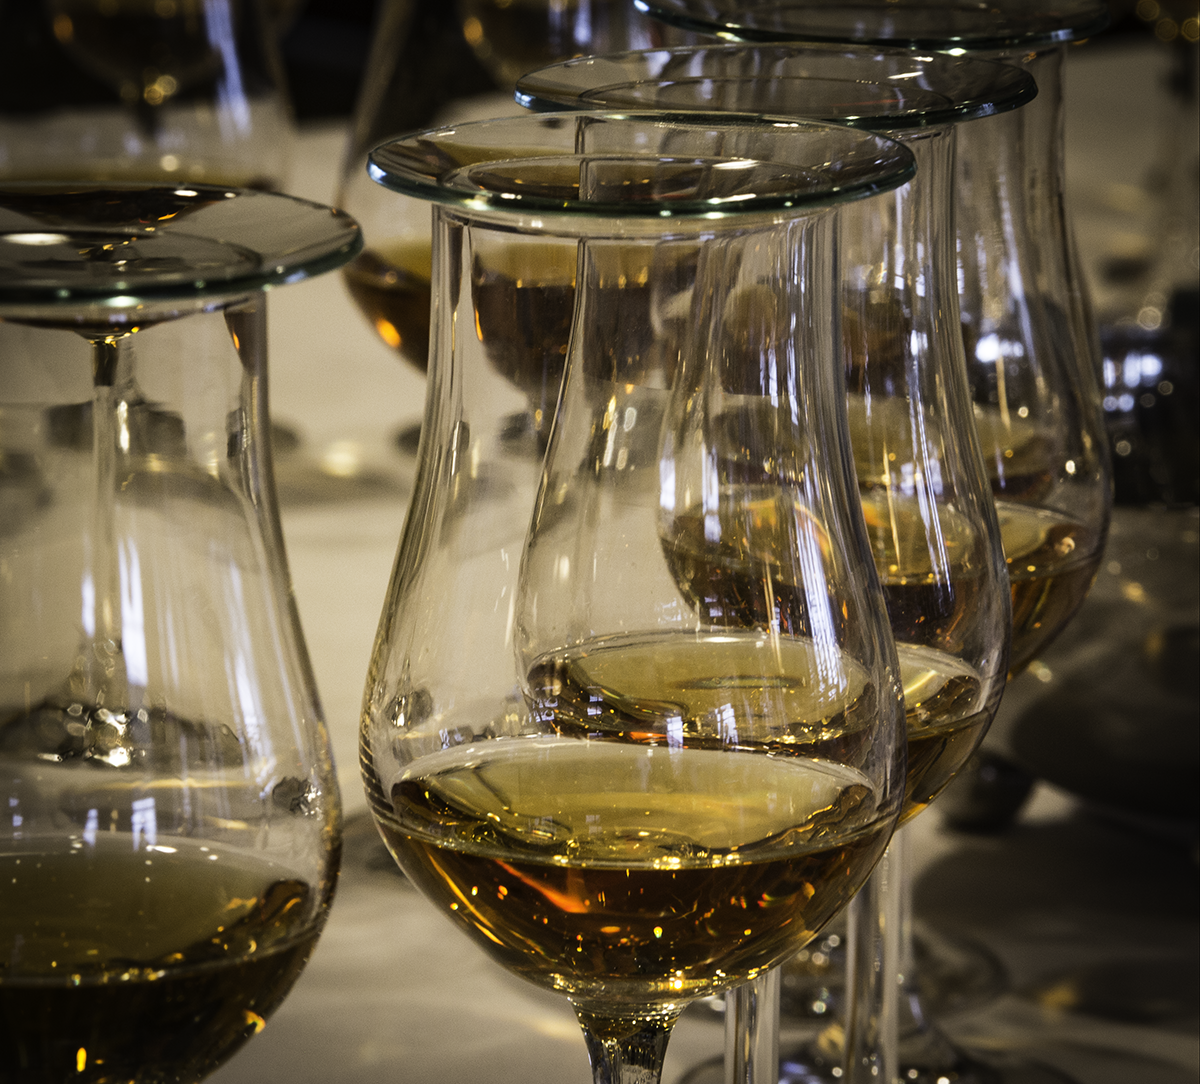 Sample glasses ready for a blind whisky tasting. Photo ©2019, Mark Gillespie/CaskStrength Media.